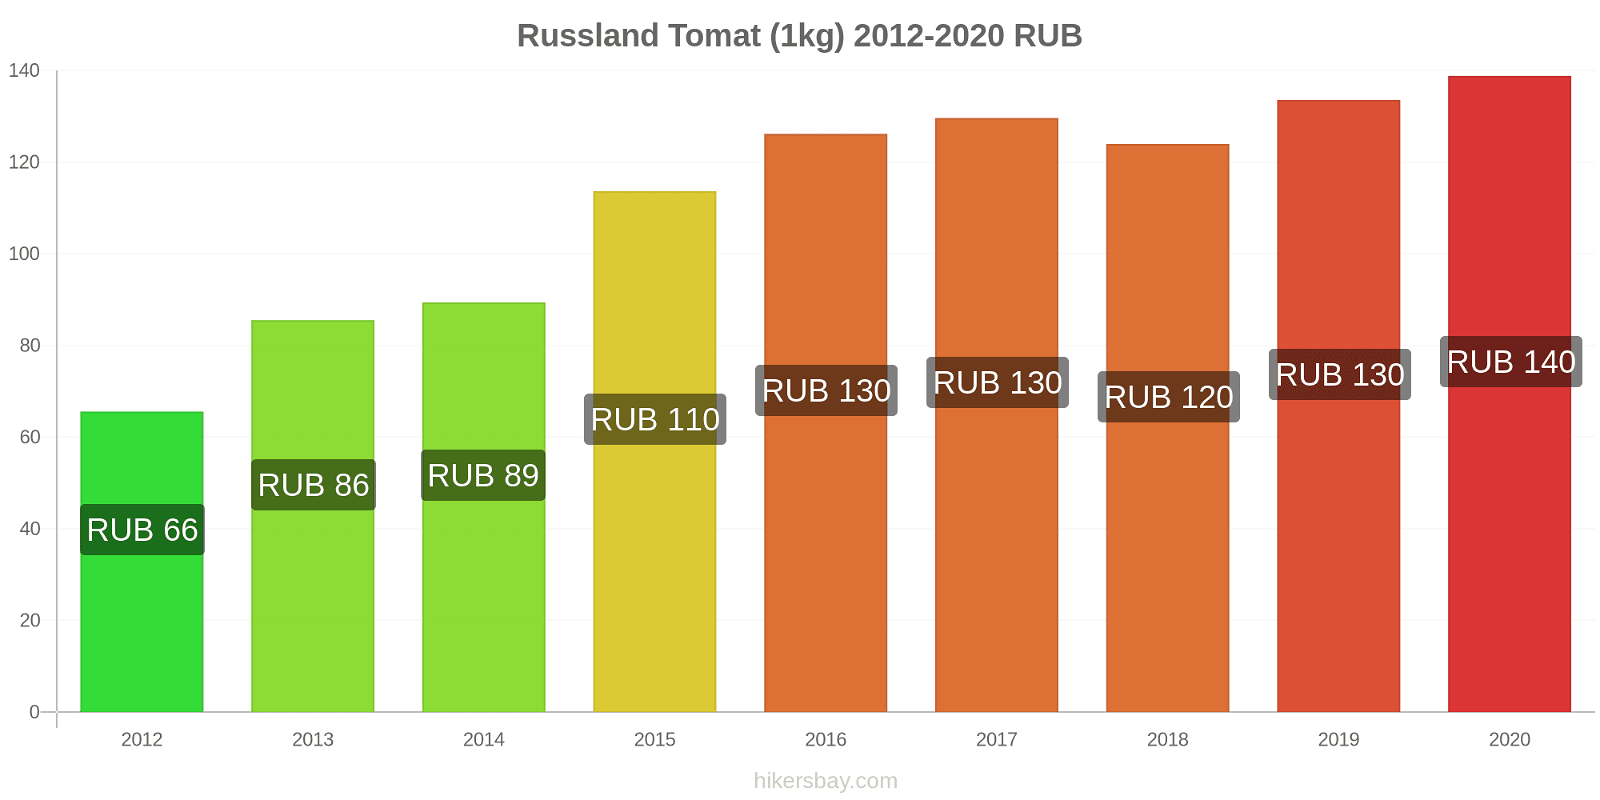 Russland prisendringer Tomat (1kg) hikersbay.com